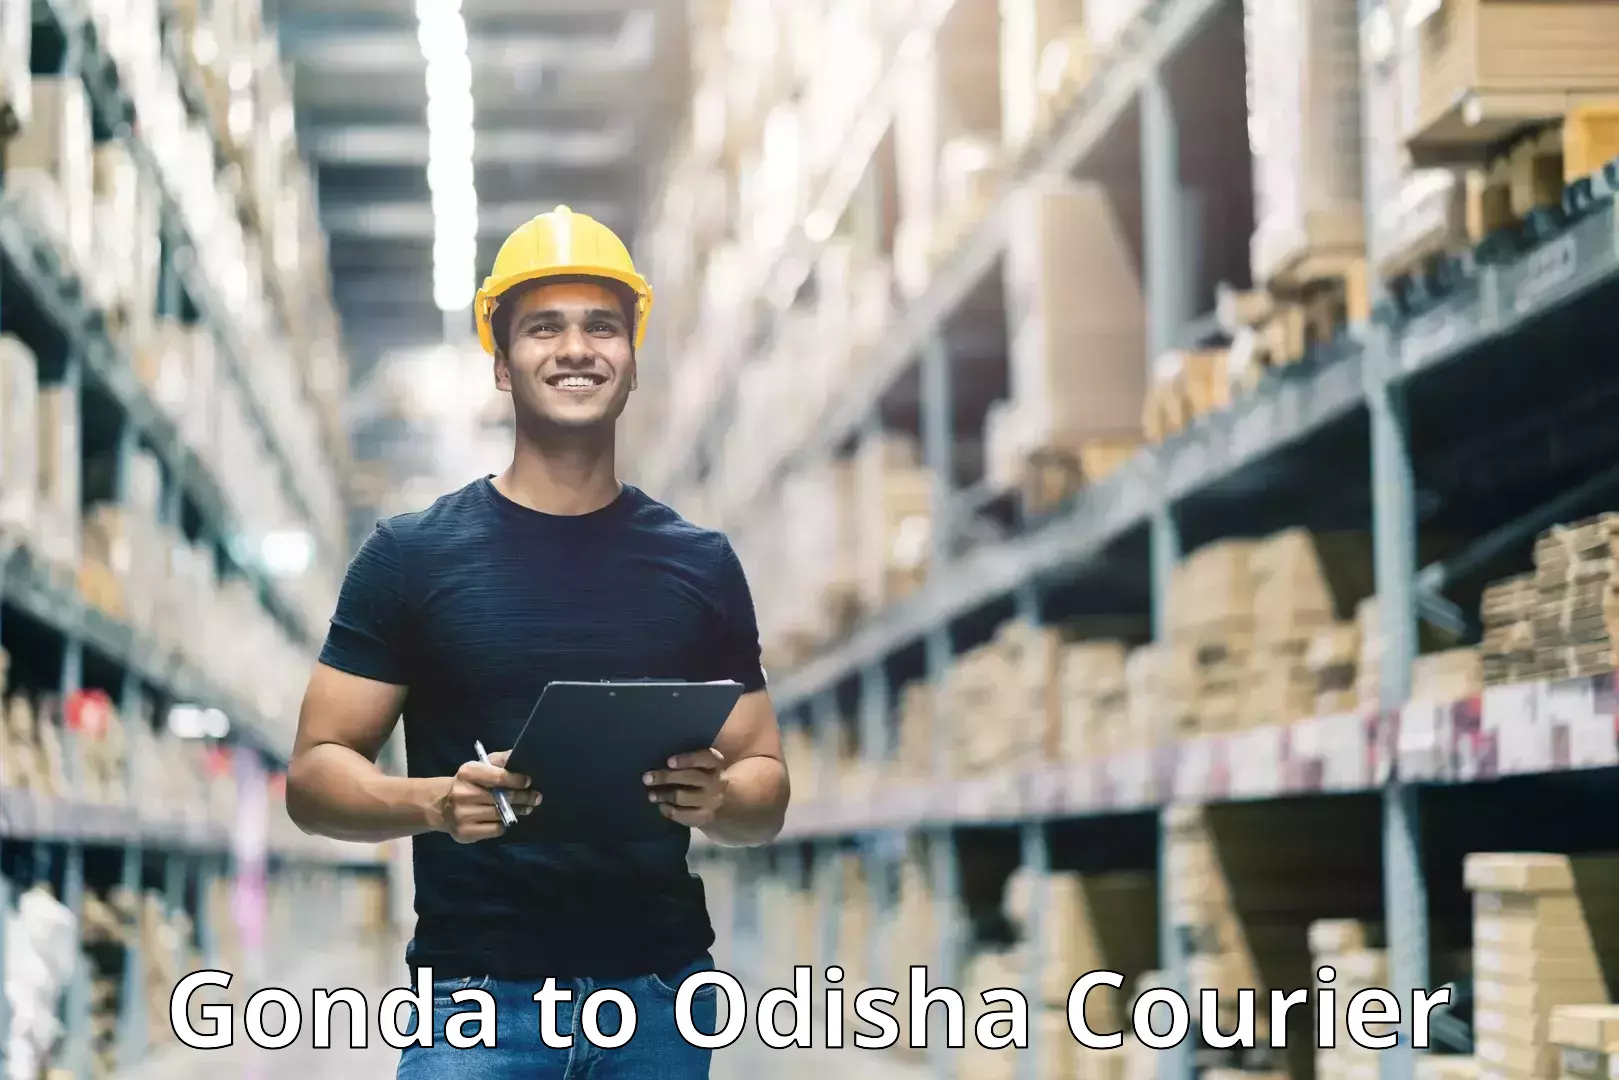 Business shipping needs Gonda to Ukhunda